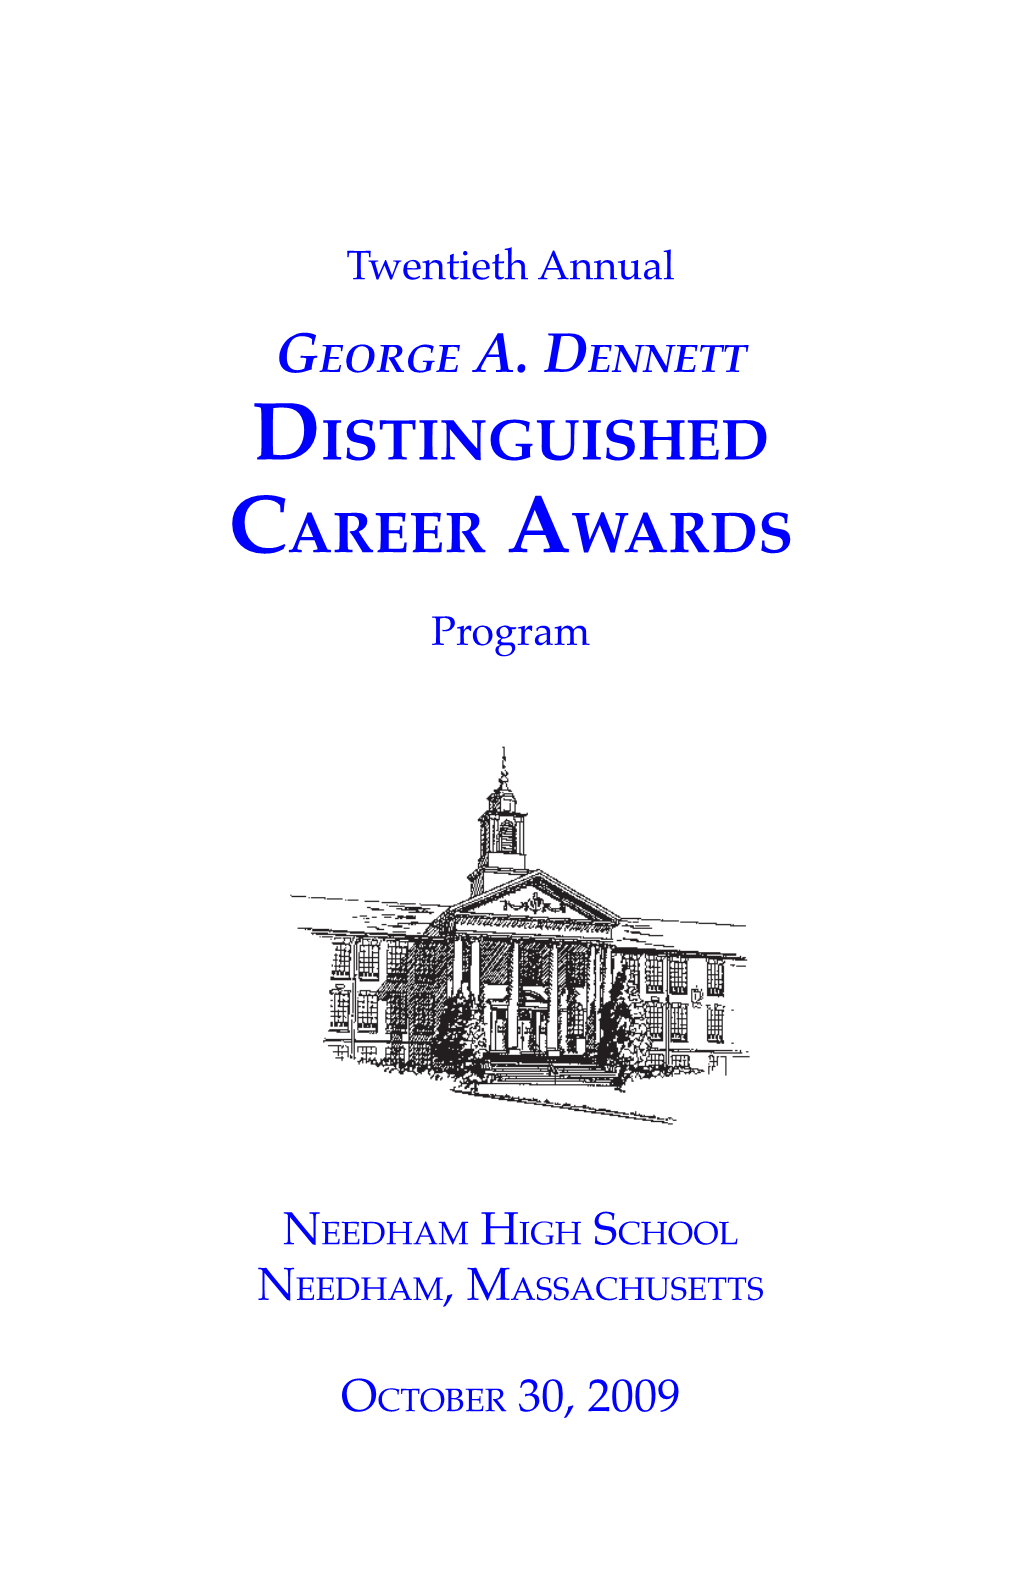 Distinguished Career Awards